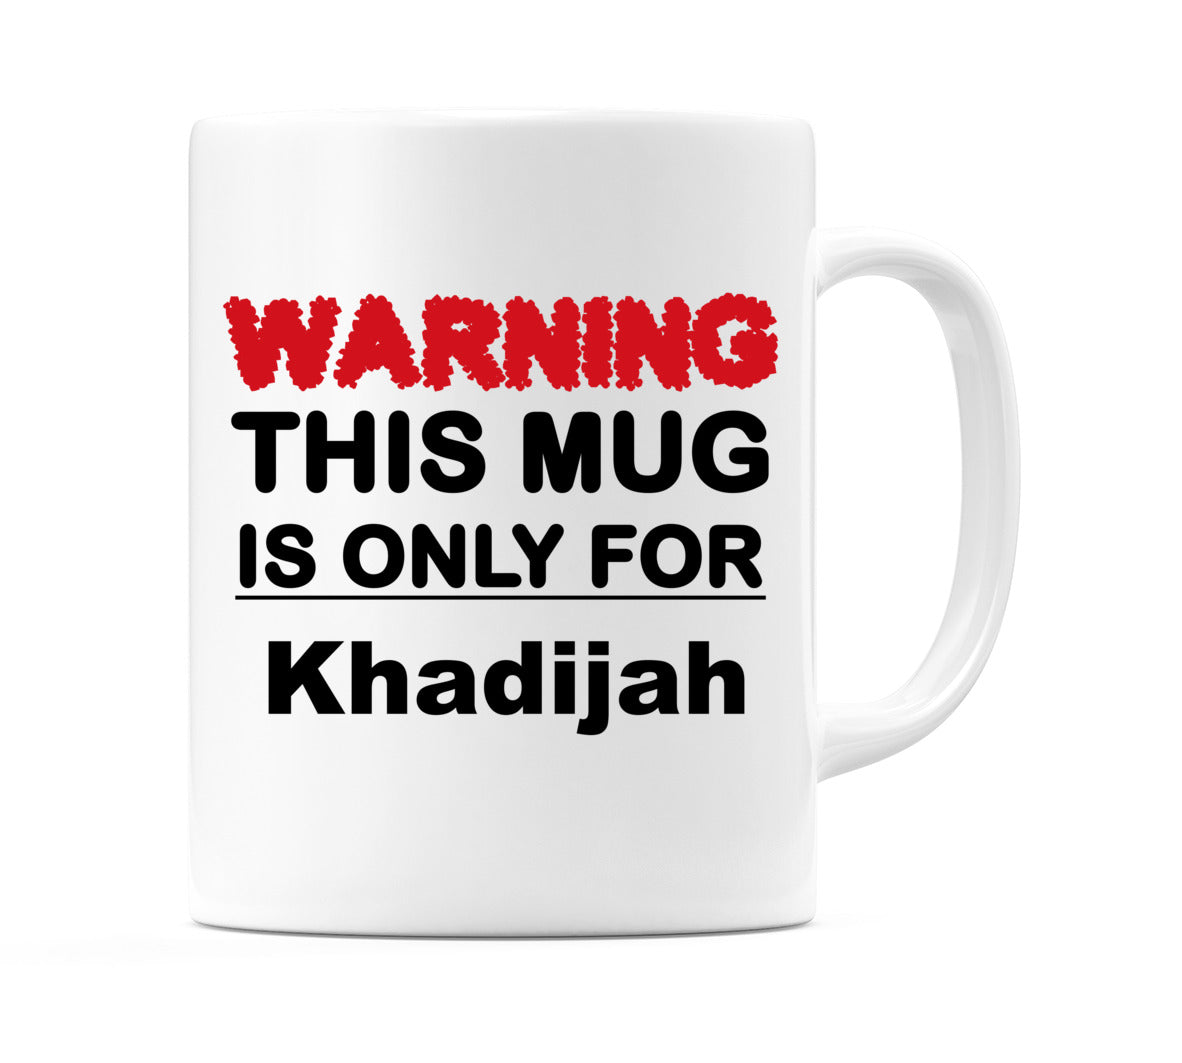 Warning This Mug is ONLY for Khadijah Mug